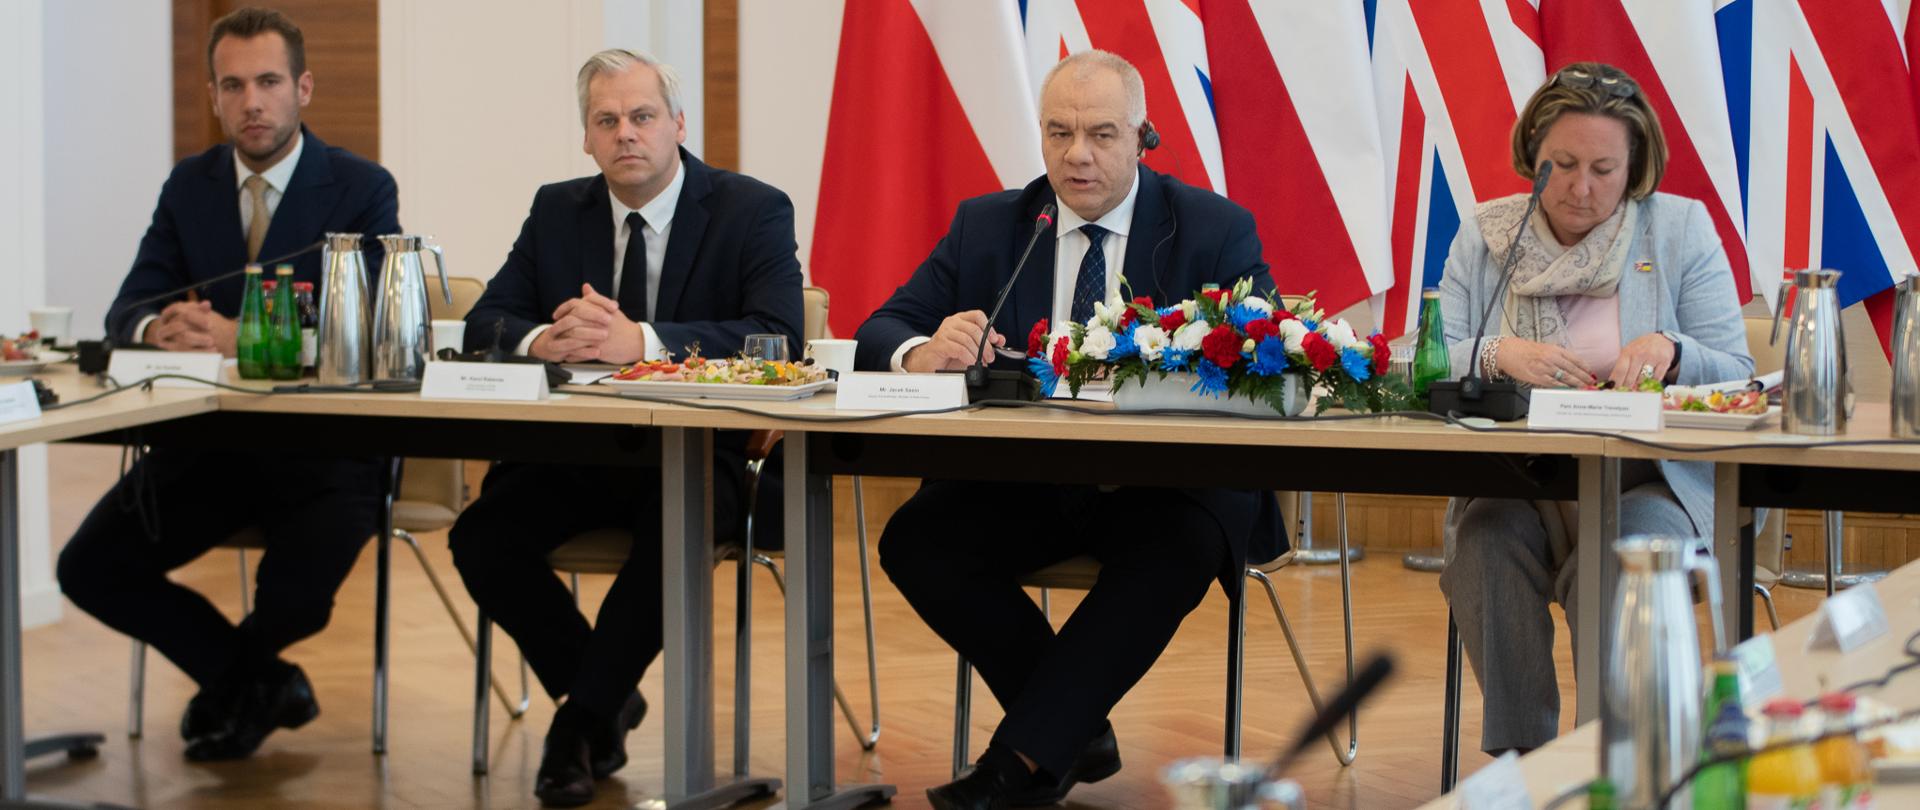 Za stołem siedzą od lewej: wiceminister Jan Kanthak, wiceminister Karol Rabenda, wicepremier Jacek Sasin oraz minister Wielkiej Brytanii Anne Marie Trevelyan